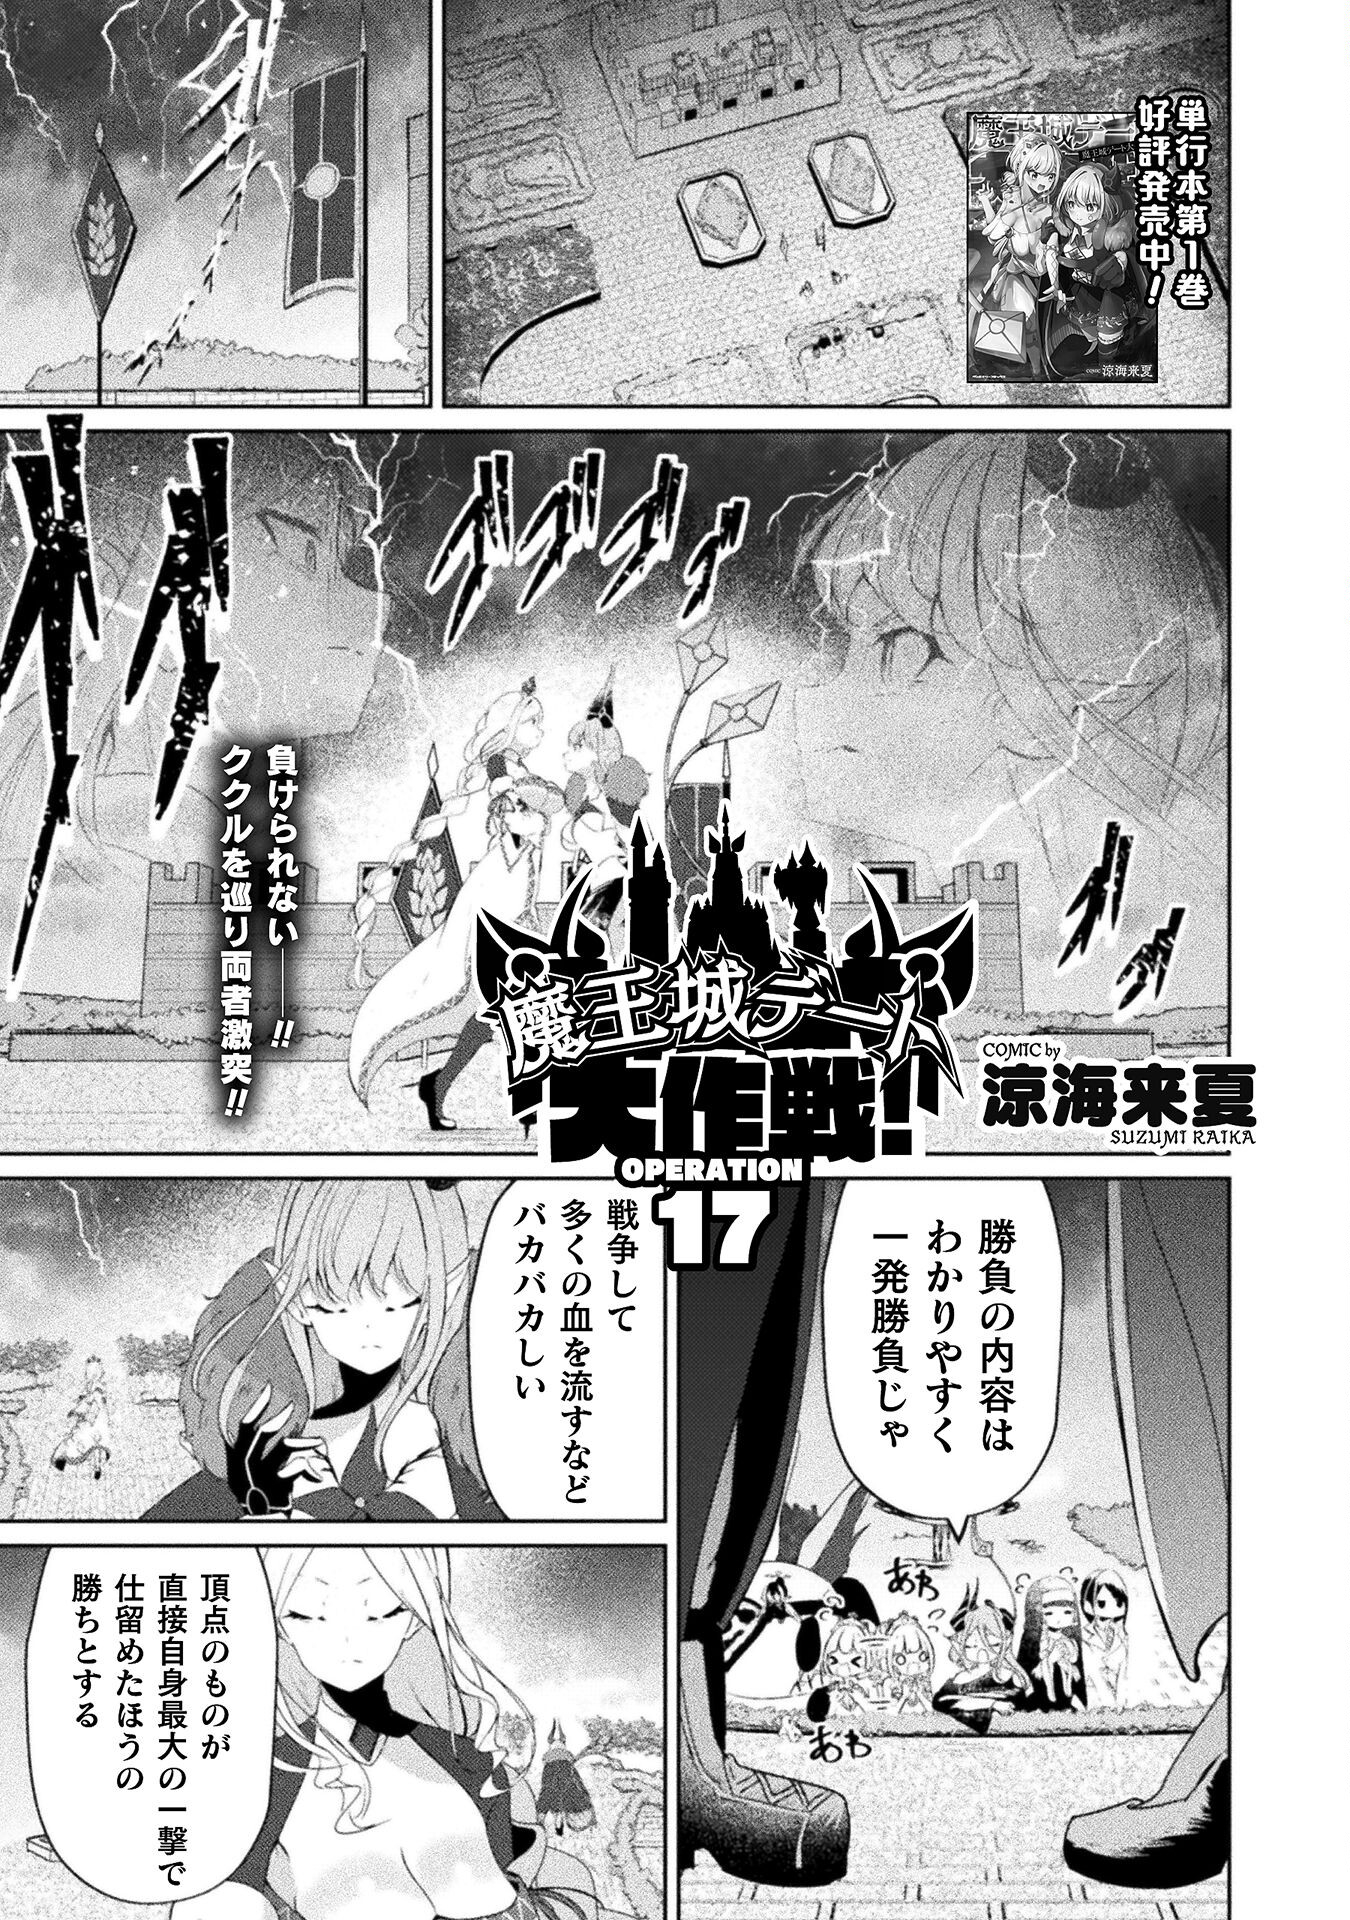 Maou Jou Date Daisakusen! - Chapter 17 - Page 1